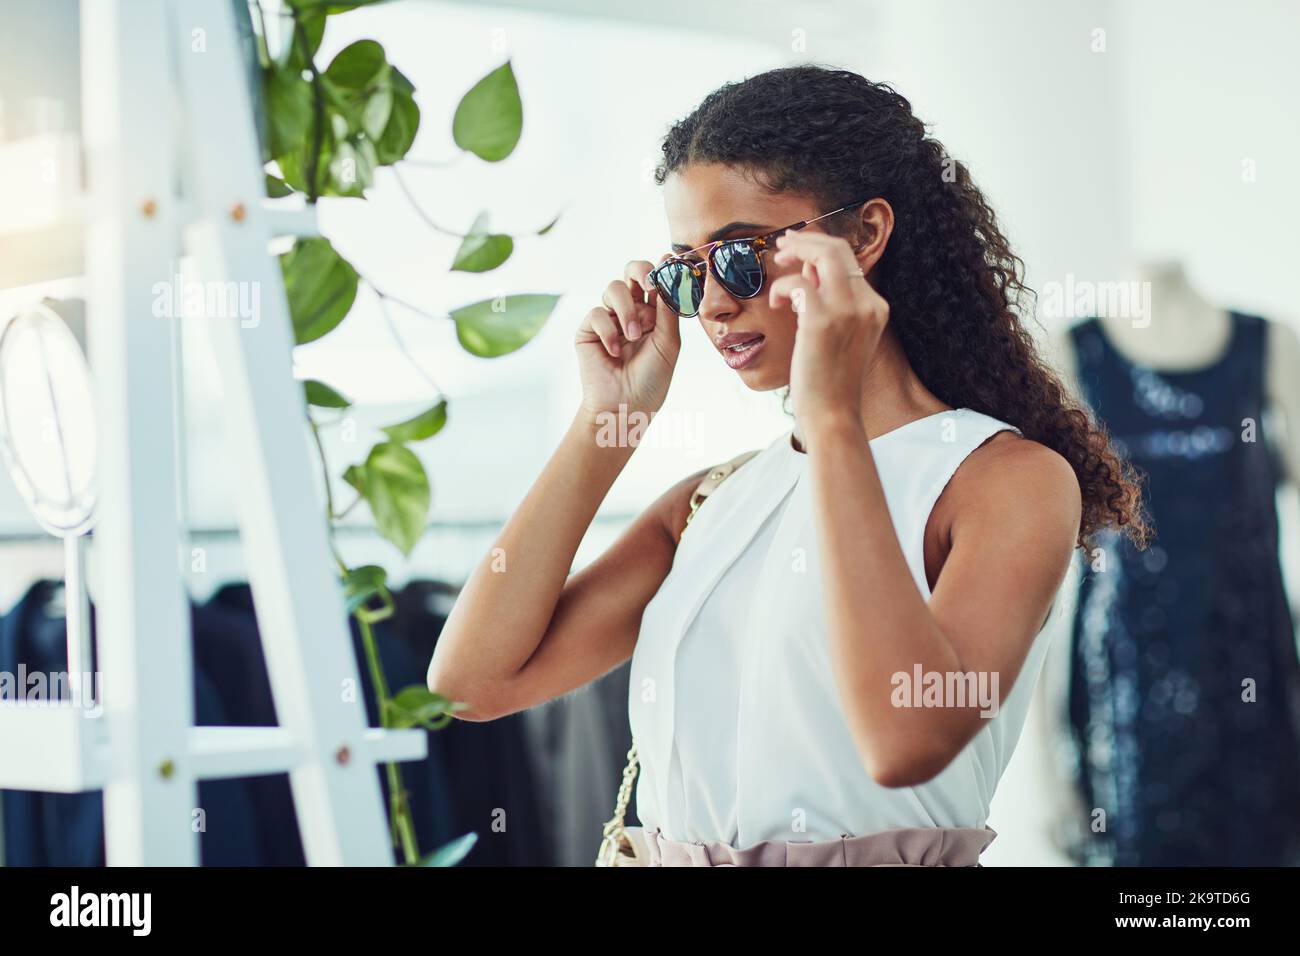 Modernisant sa garde-robe avec de nouvelles nuances. une jeune femme  attirante sur une frénésie de shopping dans une boutique Photo Stock - Alamy